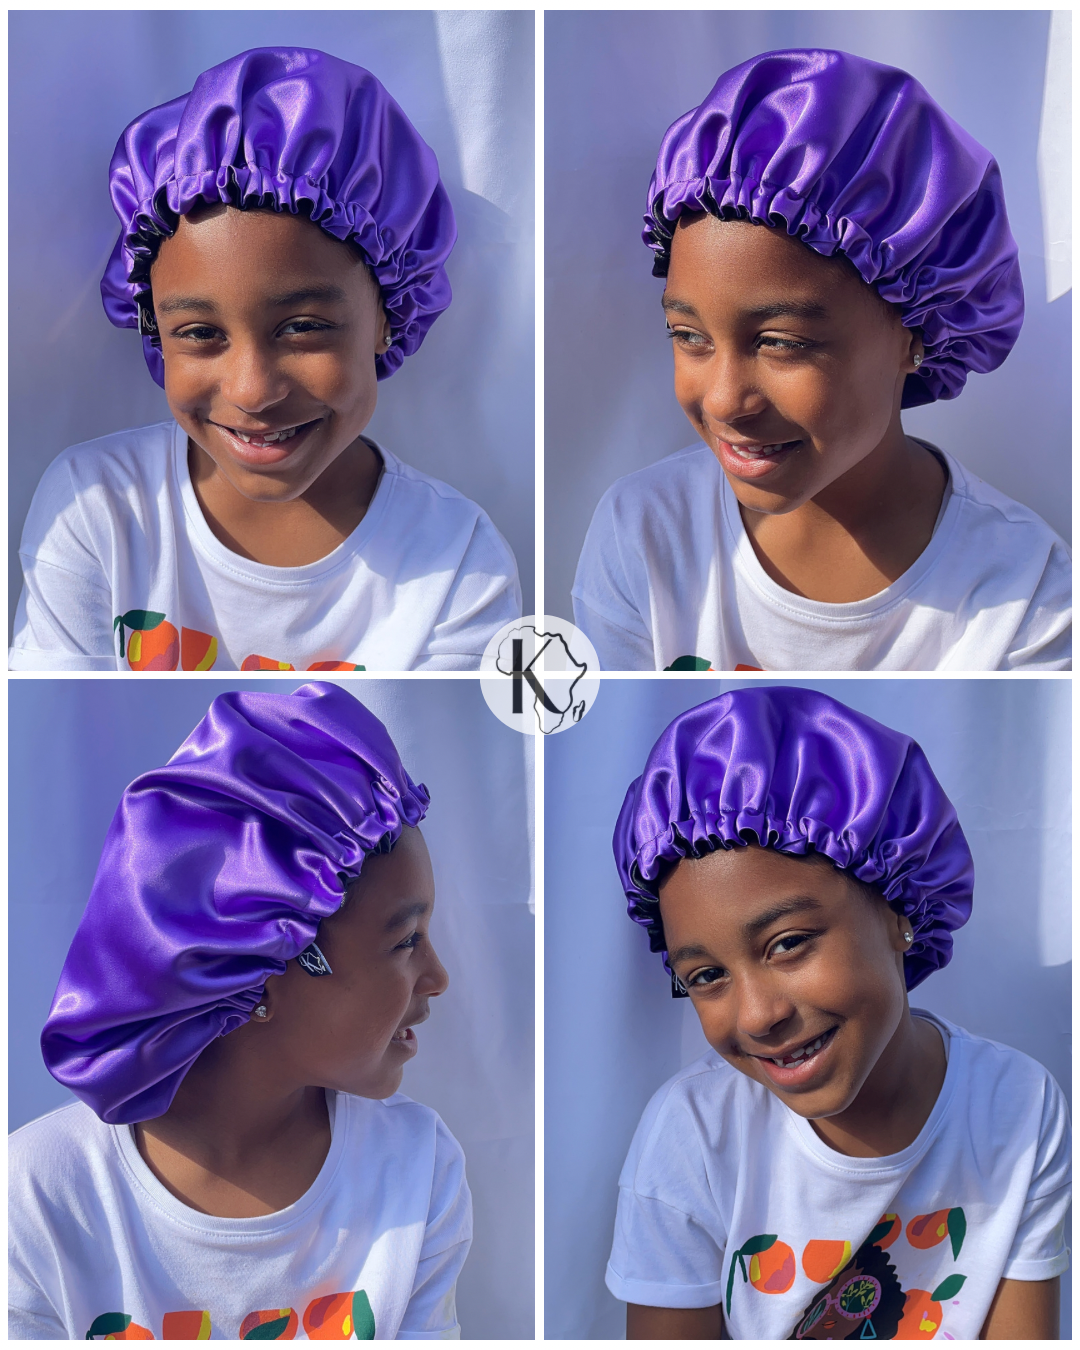 Krafts by Kerry Luxury Satin Bonnet - Purple